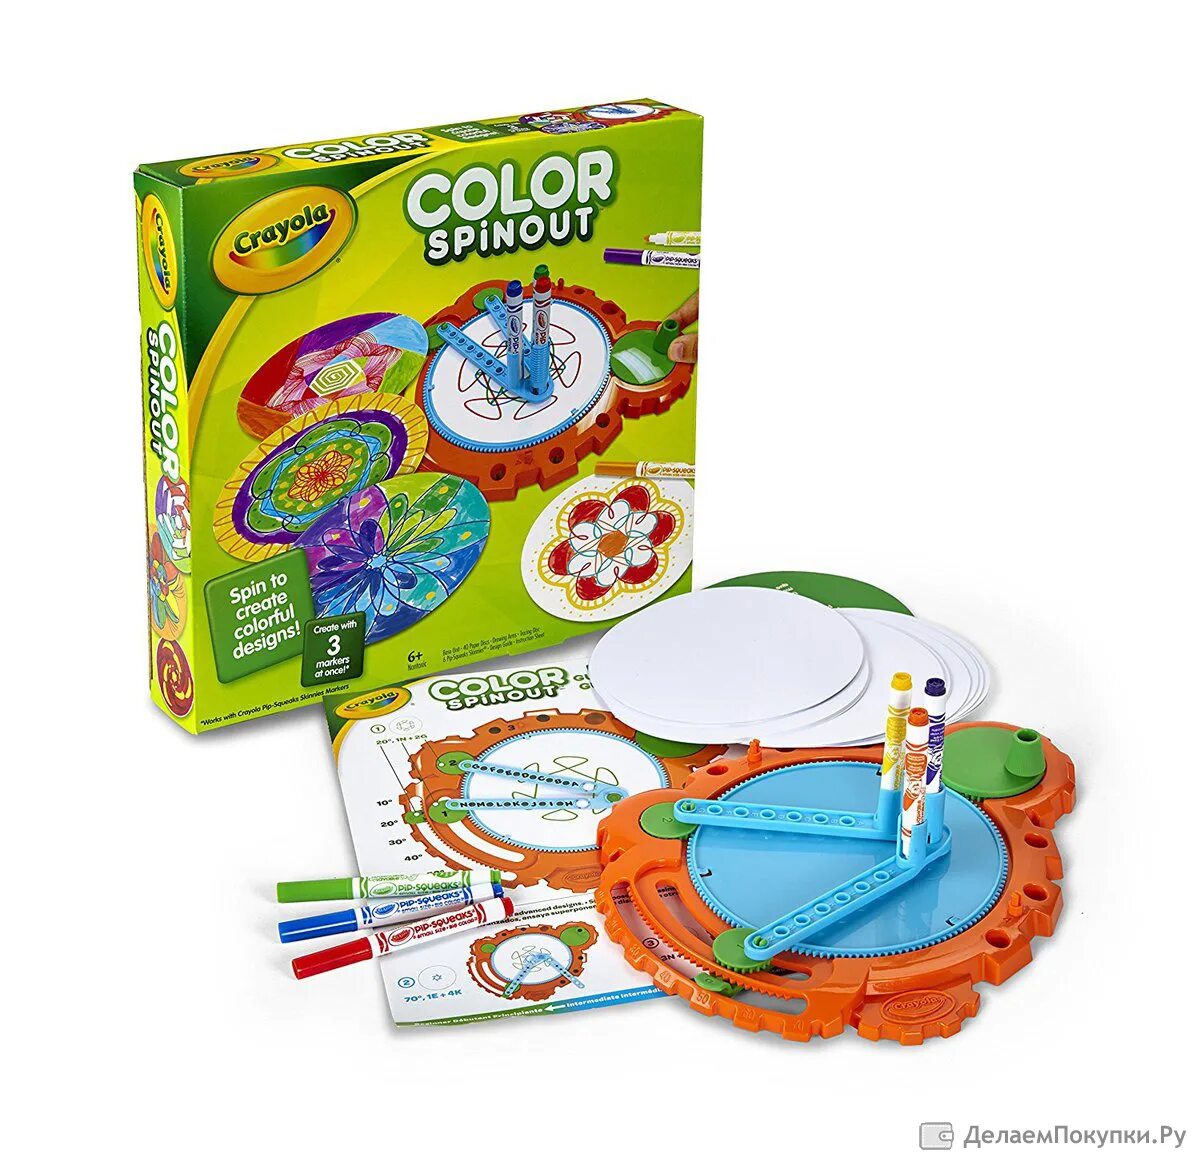 Toy paint. Краски игрушки. Crayola Color. Crayola Color Spinout. Игрушки краски игрушки.